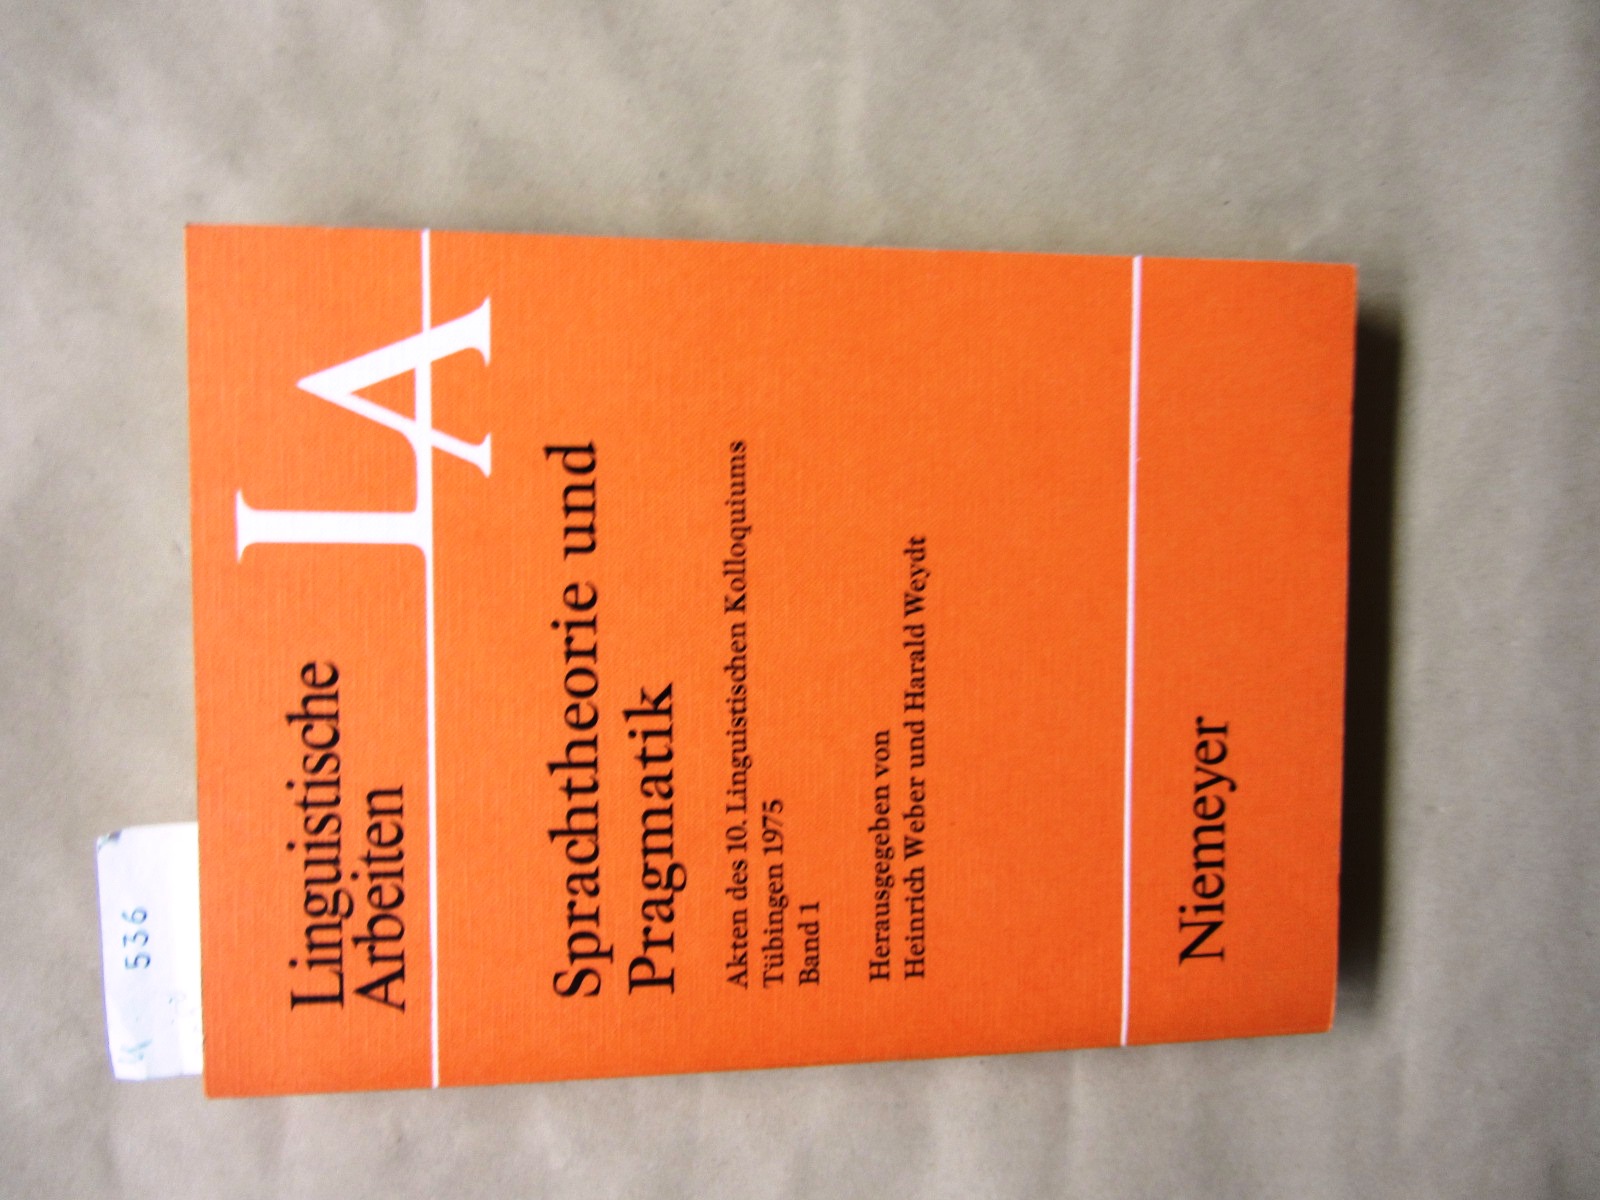 Weber, Heinrich und Harald Weydt (Hrsg.):  Sprachtheorie und Pragmatik. Akten des 10. Linguistischen Kolloquiums Tübingen 1975. Band 1. ("Linguistische Arbeiten", 31) 